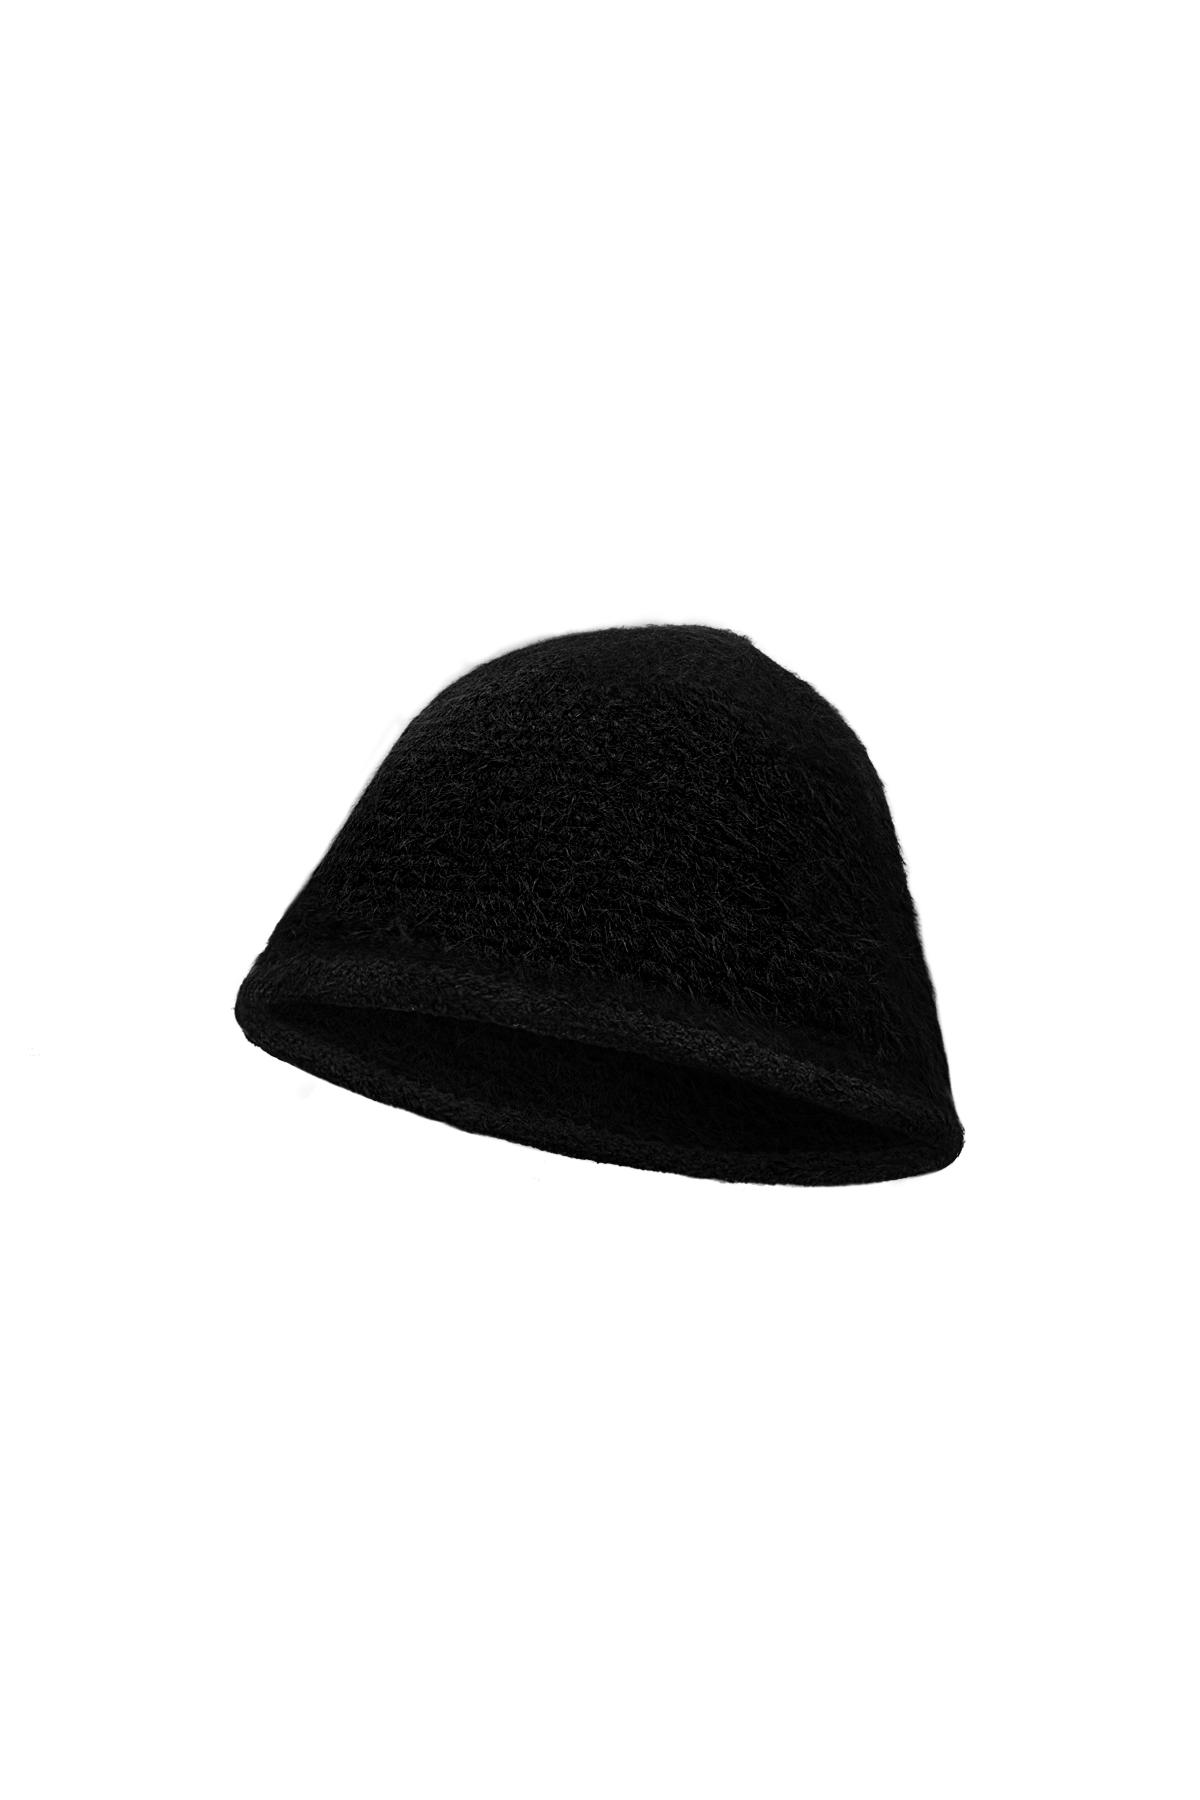 Cappello da pescatore basic Black Polyester h5 